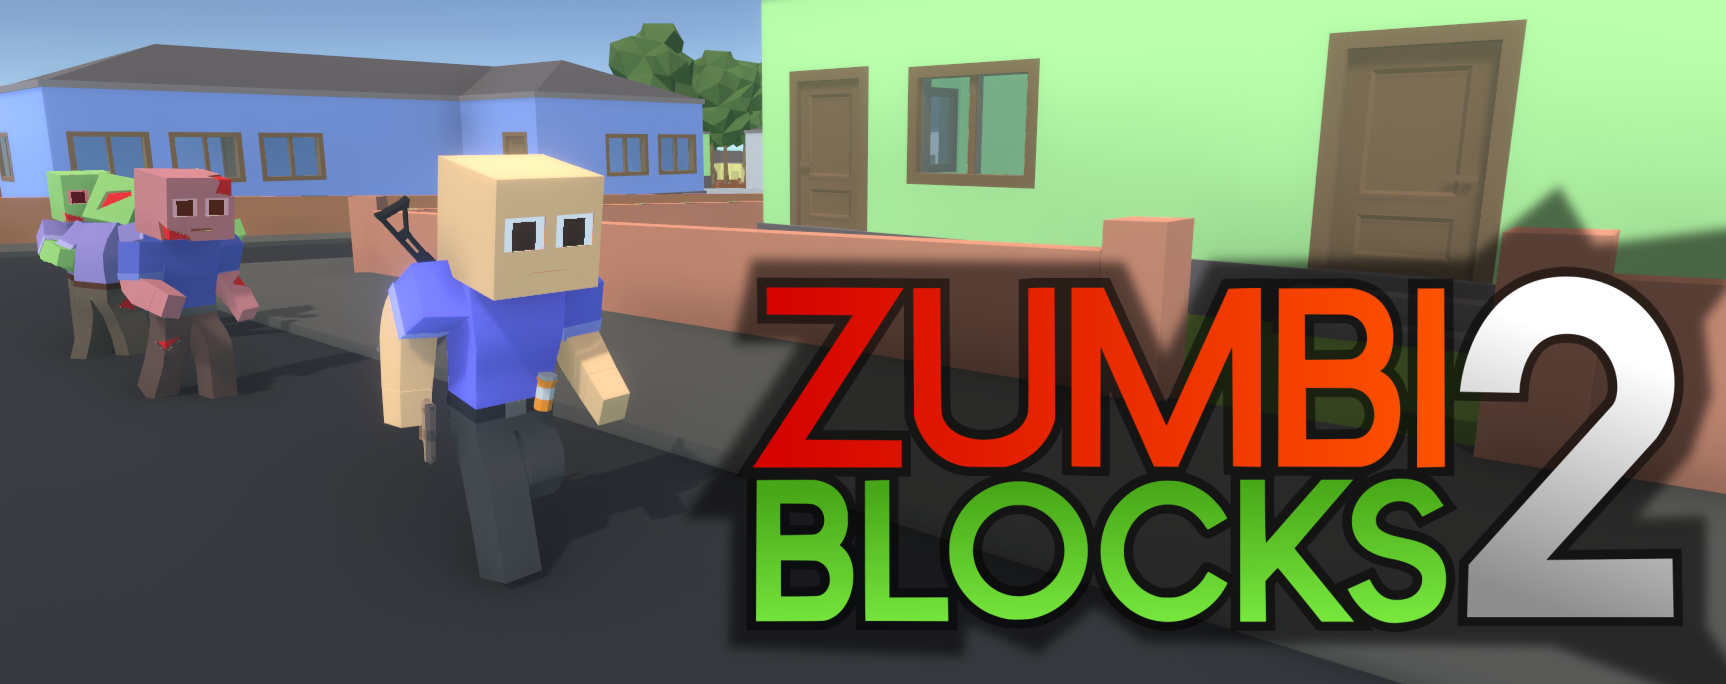 zumbi blocks ultimate 1.0.8